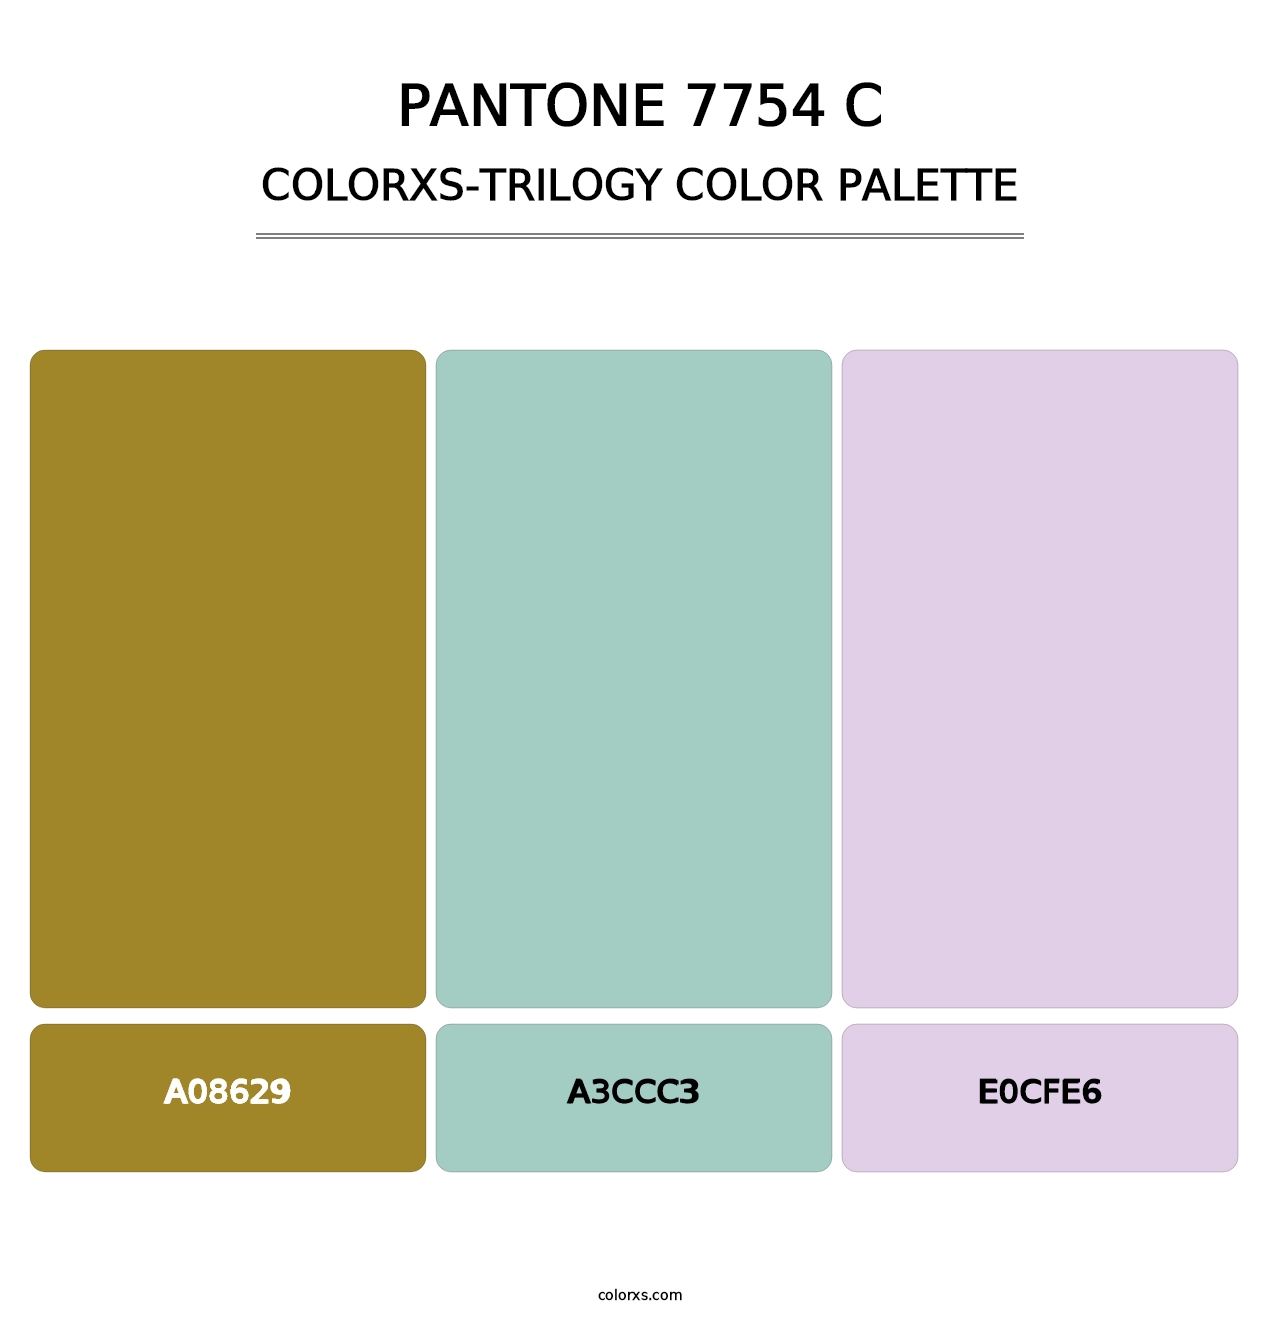 PANTONE 7754 C - Colorxs Trilogy Palette